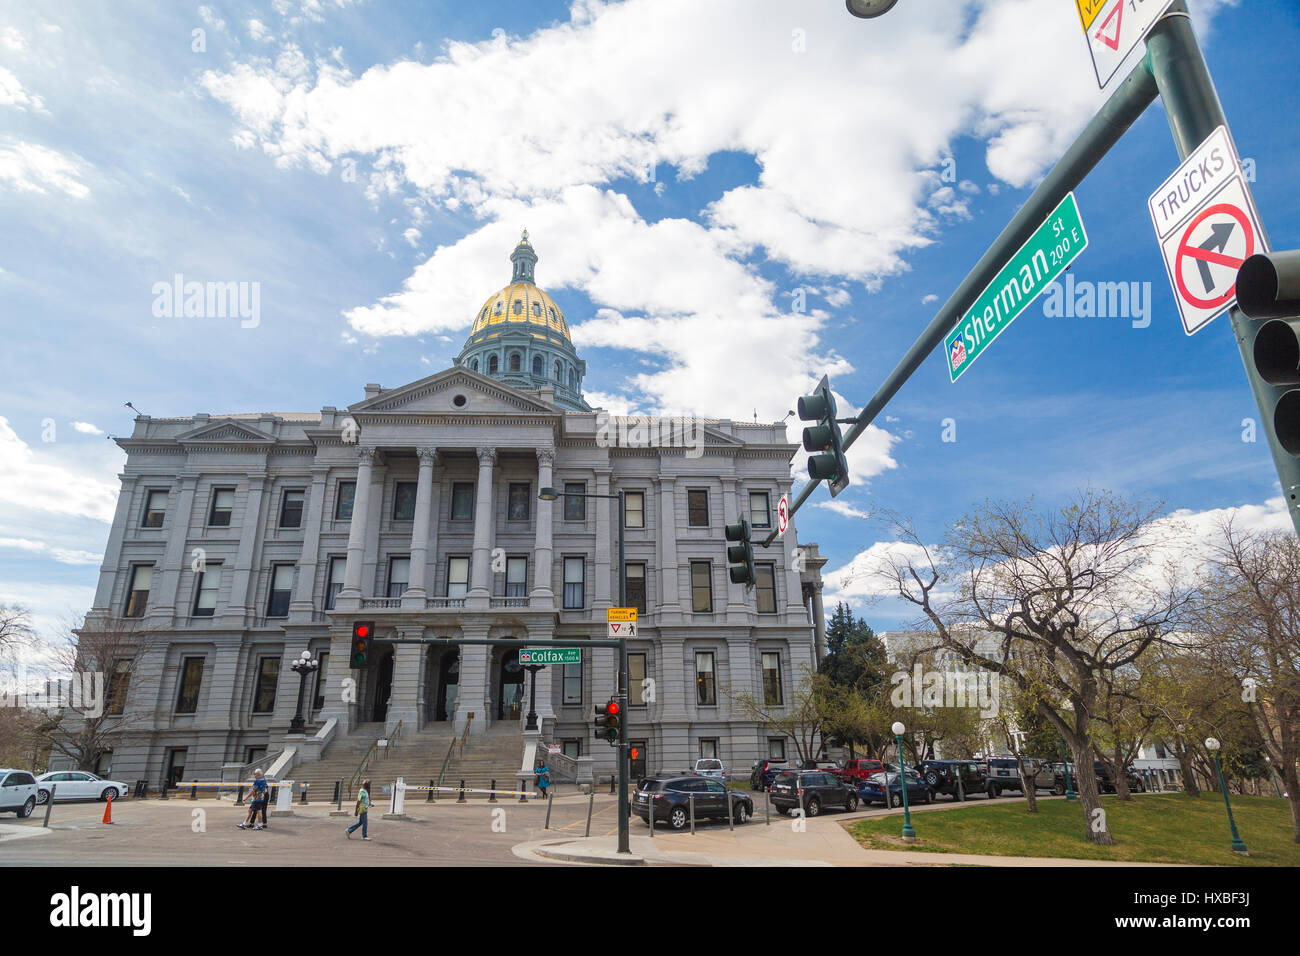 El edificio del capitolio estatal exterior amplio ángulo de visión con el Sherman y Colfax Street Signs en Denver, Colorado Foto de stock